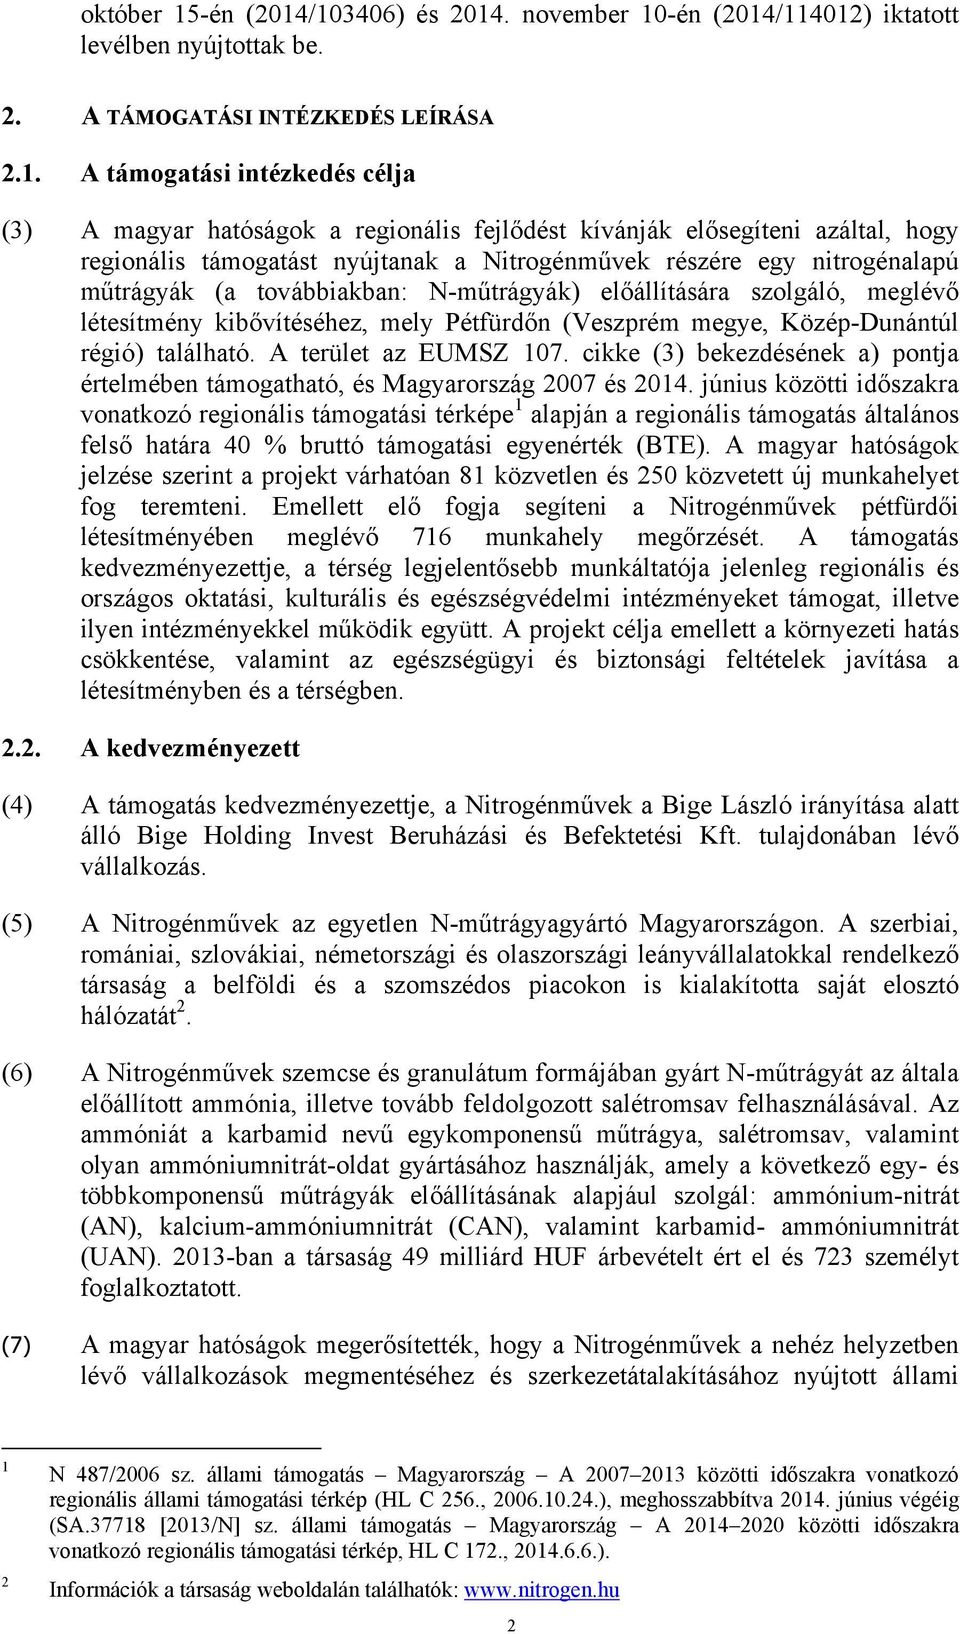 /103406) és 2014. november 10/114012) iktatott levélben nyújtottak be. 2. A TÁMOGATÁSI INTÉZKEDÉS LEÍRÁSA 2.1. A támogatási intézkedés célja (3) A magyar hatóságok a regionális fejlődést kívánják